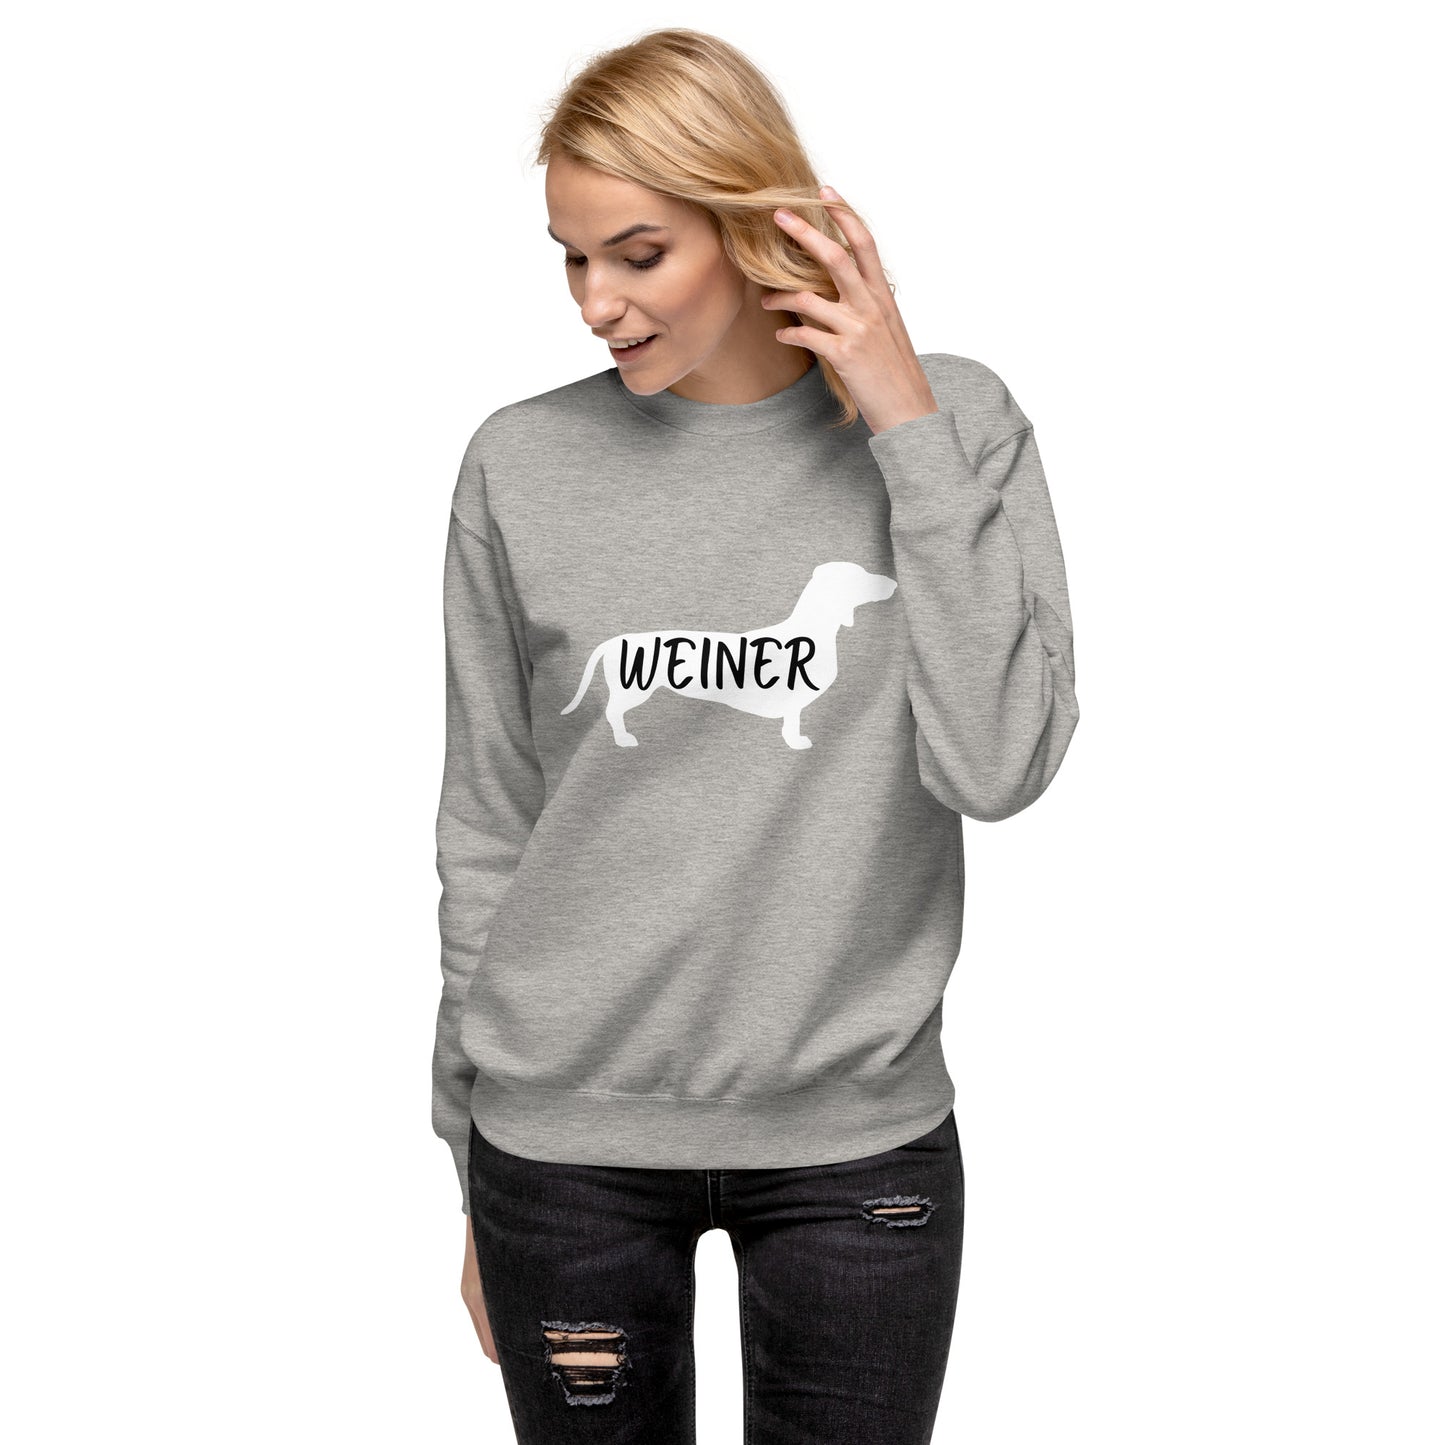 Weiner Dog Womens Sweatshirt